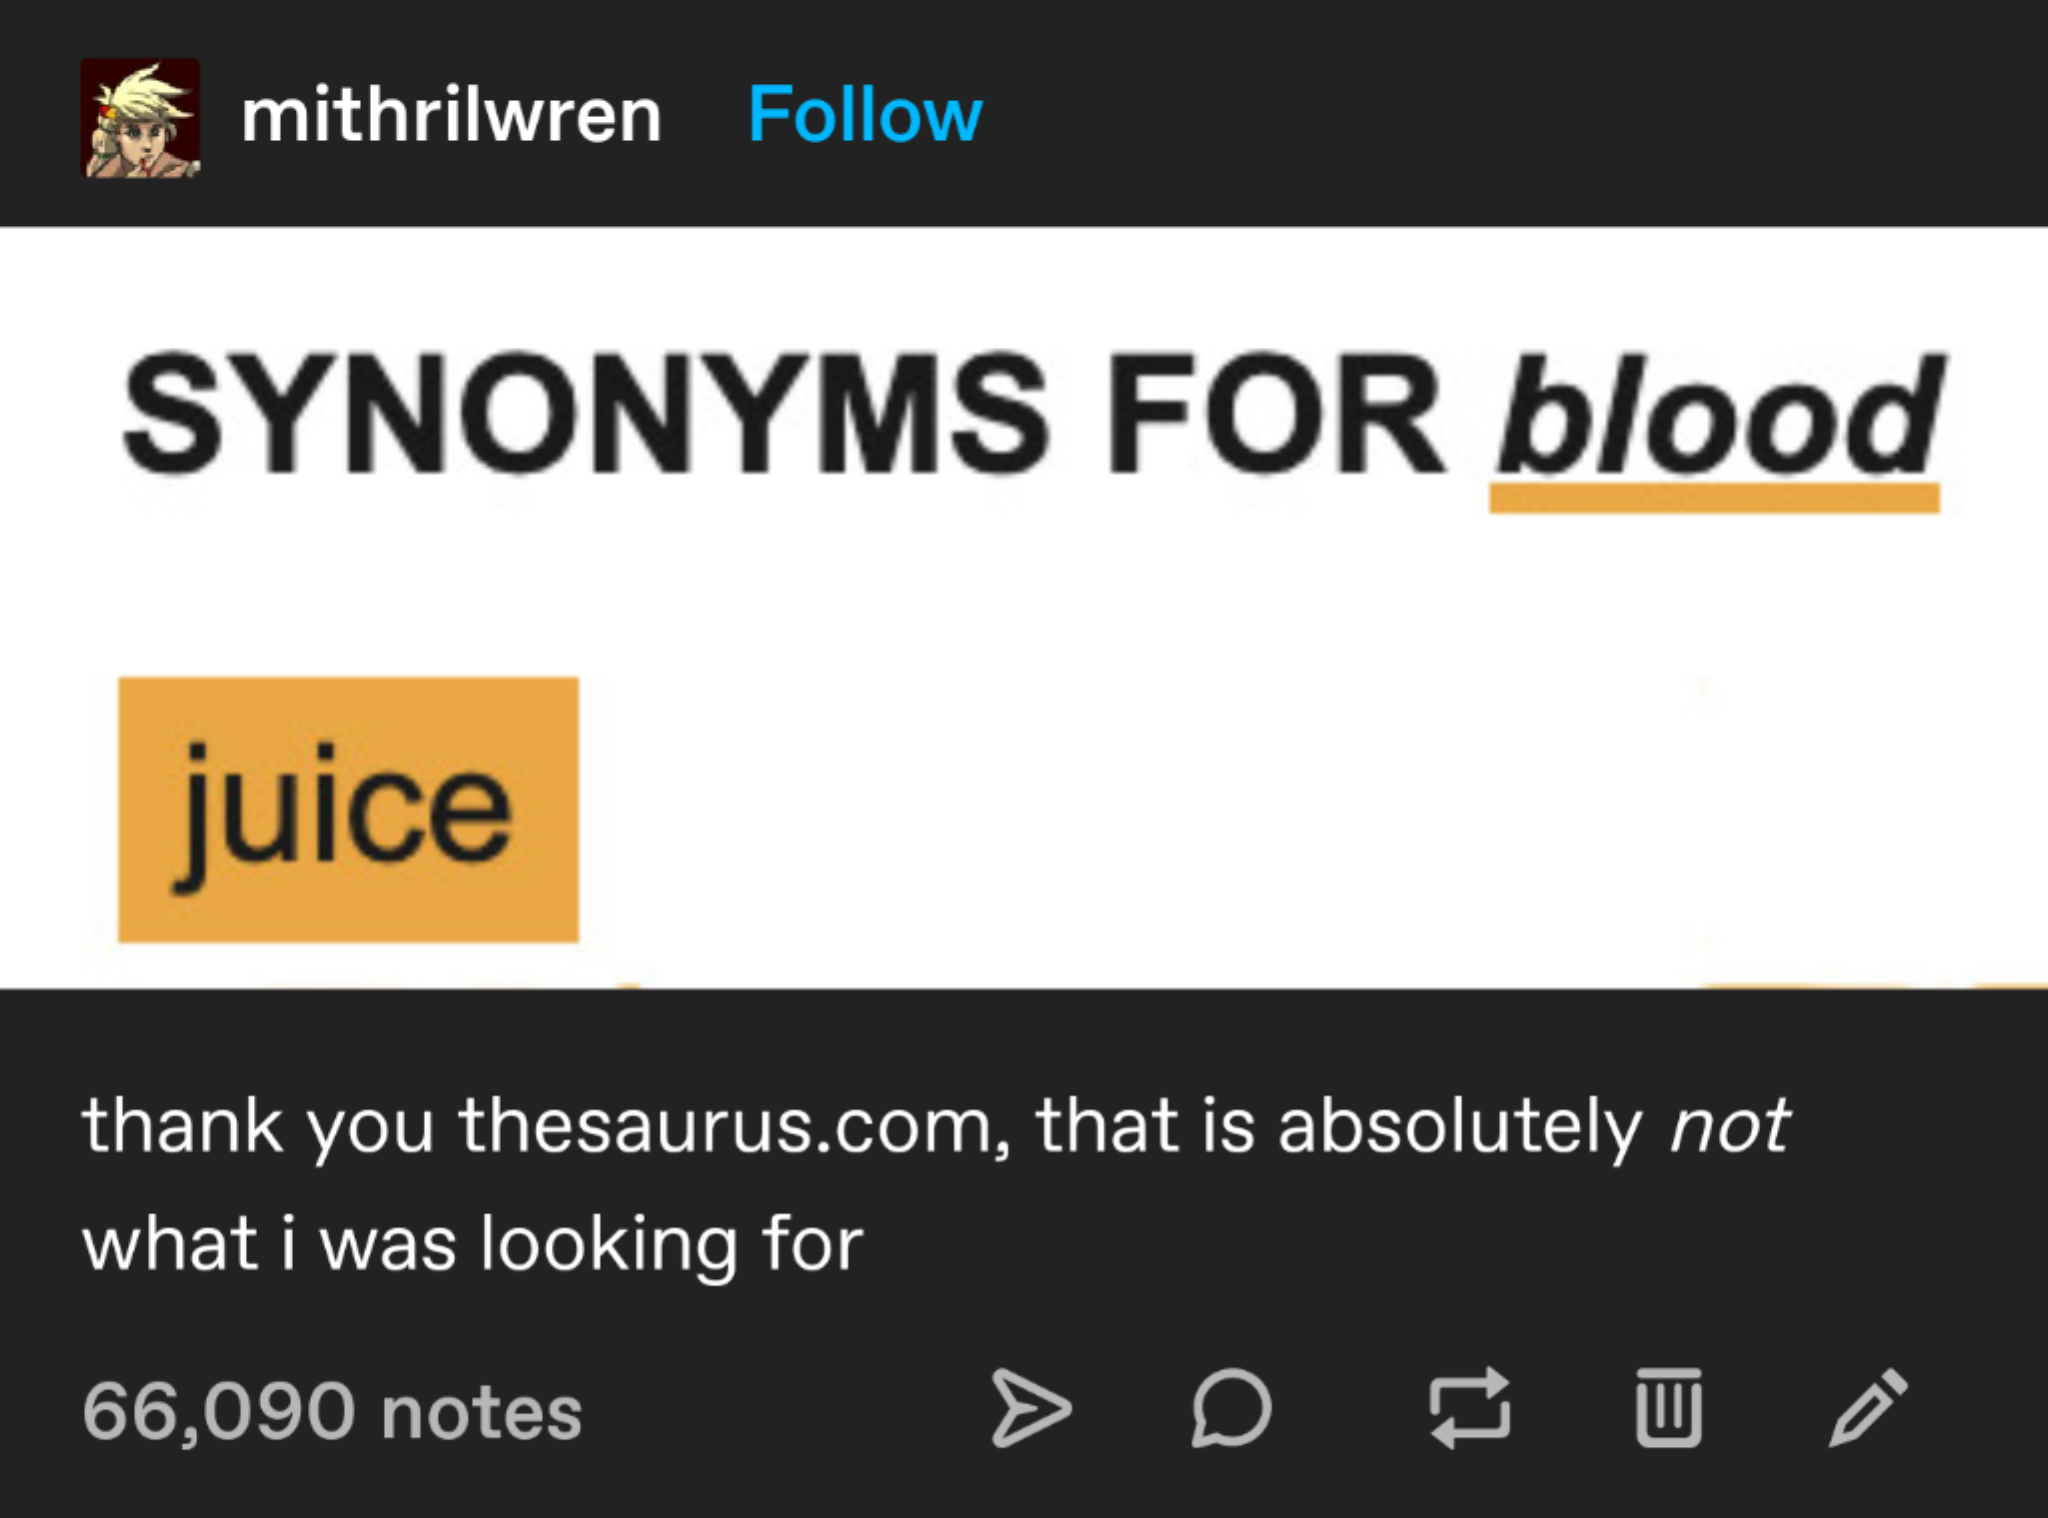 blood thesaurus